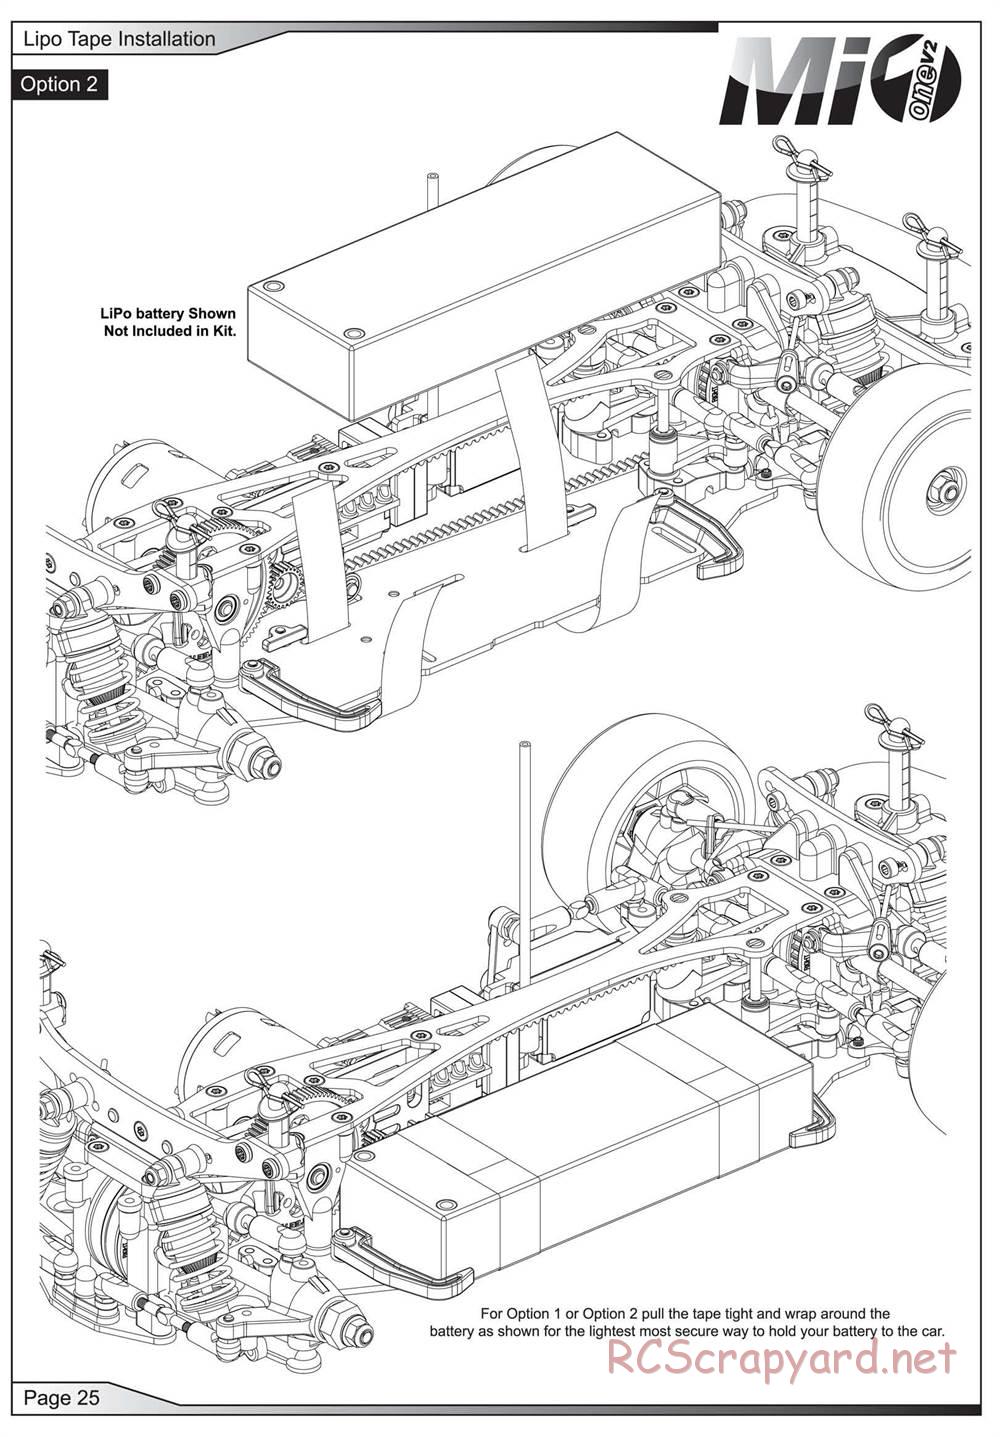 Schumacher - Mi1v2 - Manual - Page 26